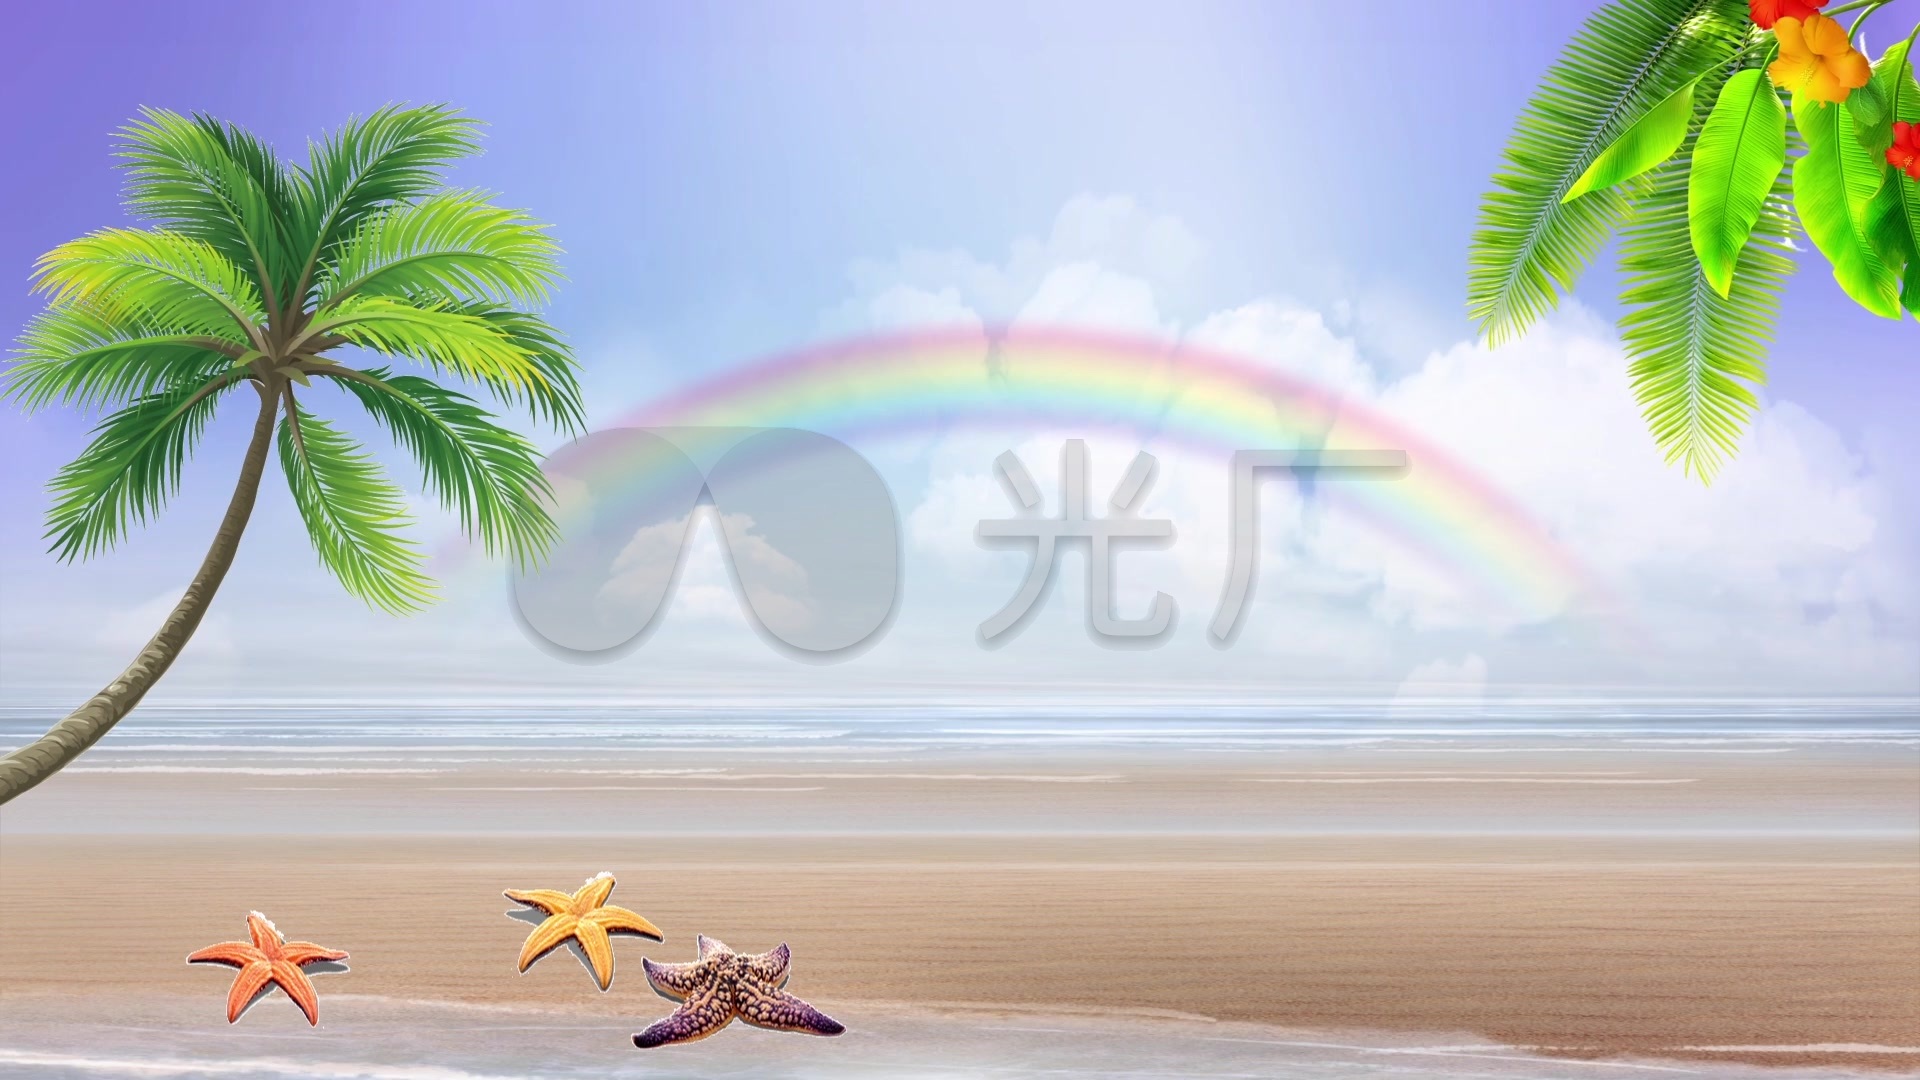 海边彩虹高清精选图片 | 犀牛图片网